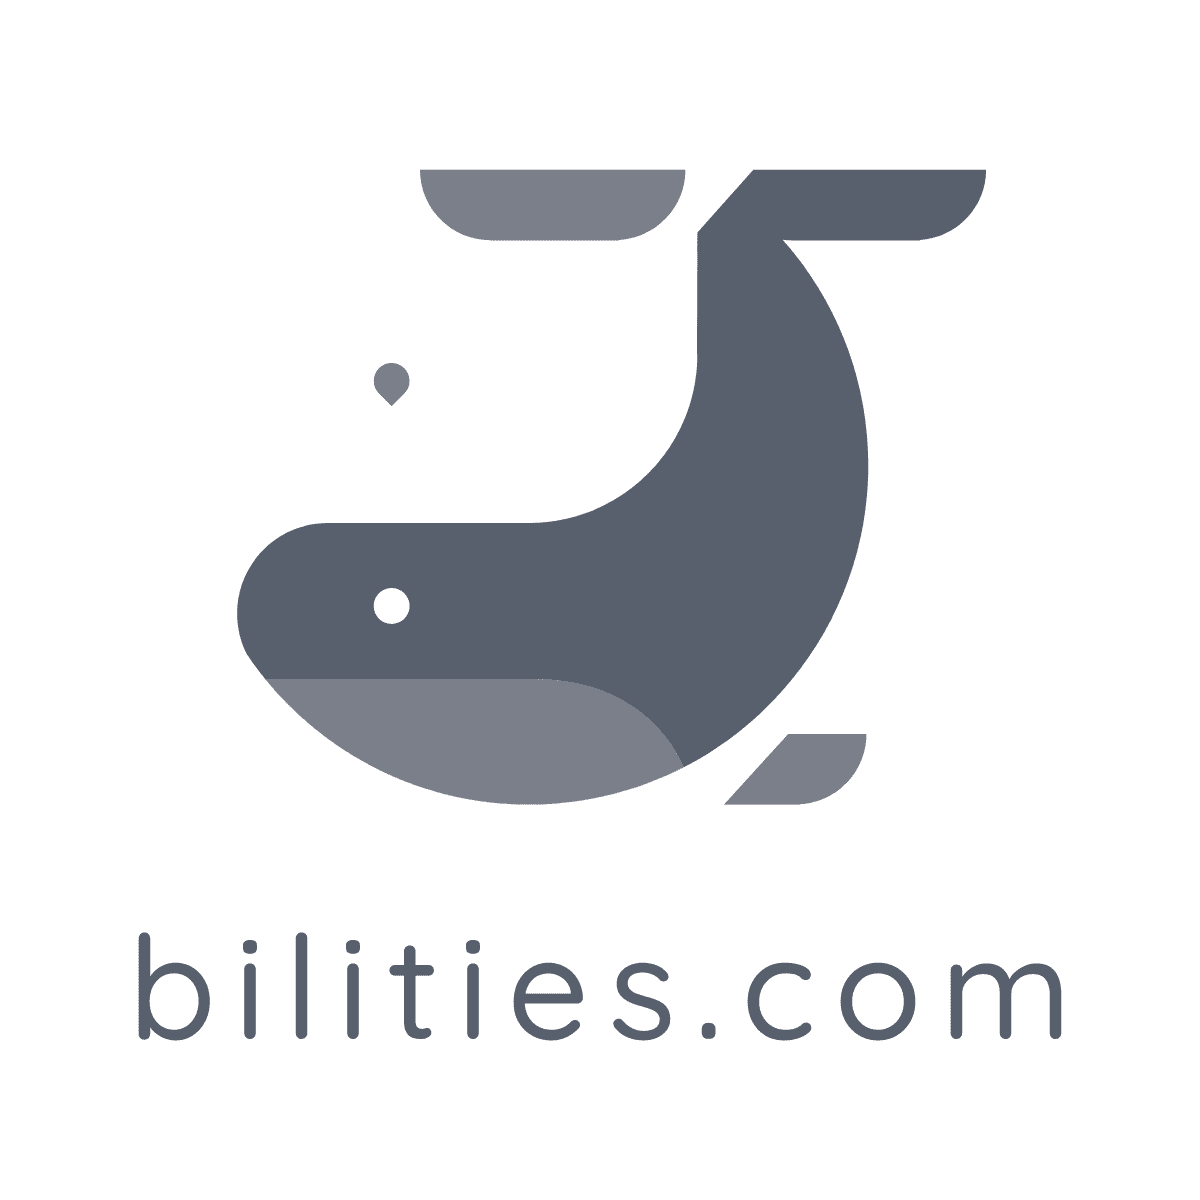 bilities.com